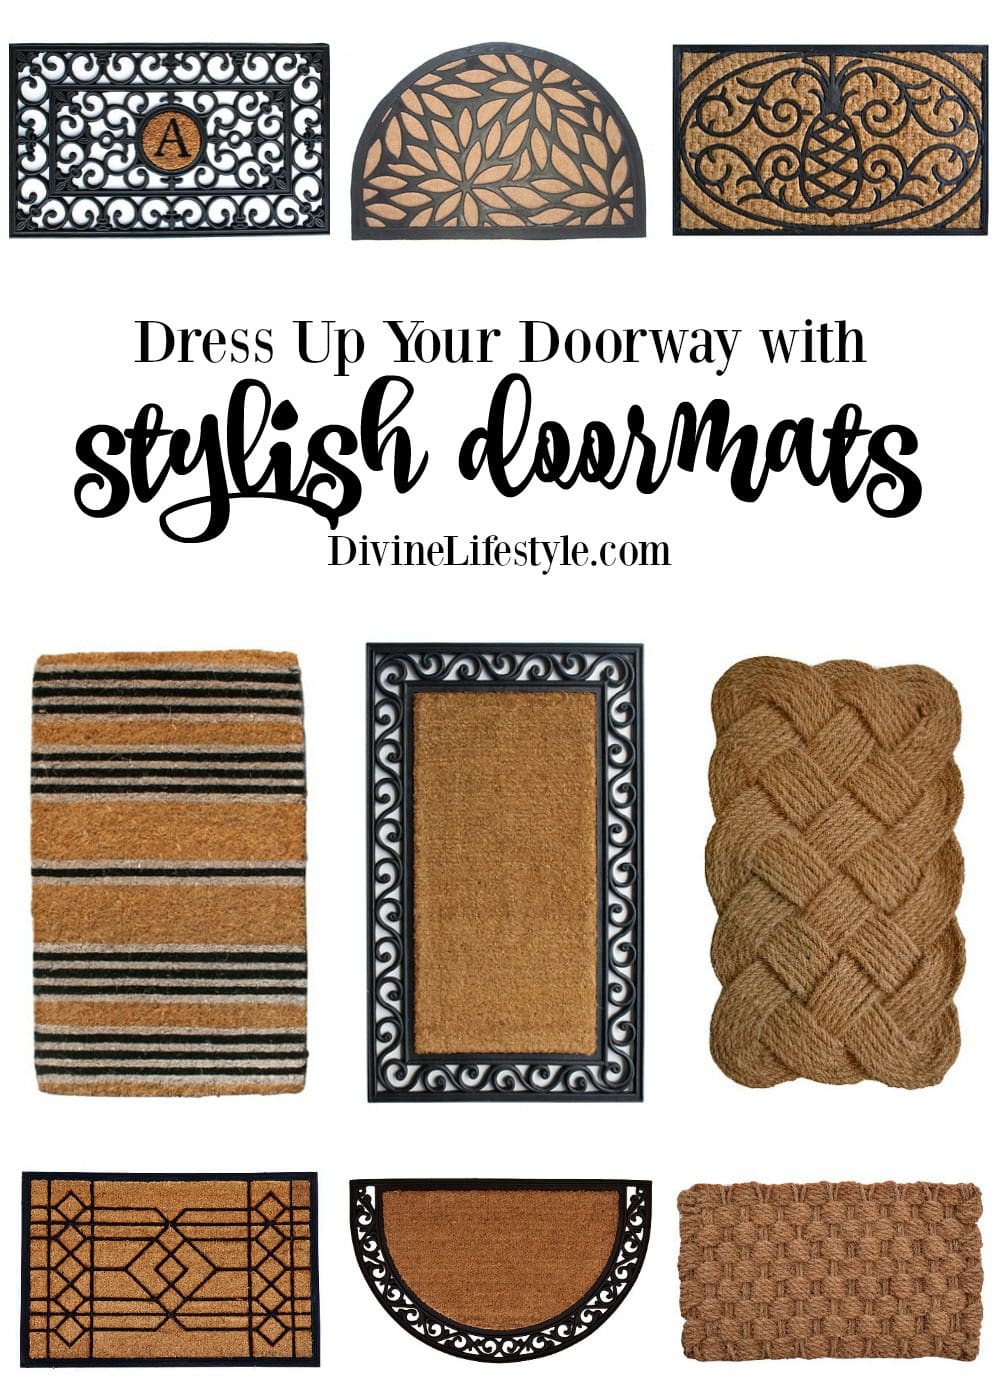 Stylish Doormats to Dress Up Your Doorway